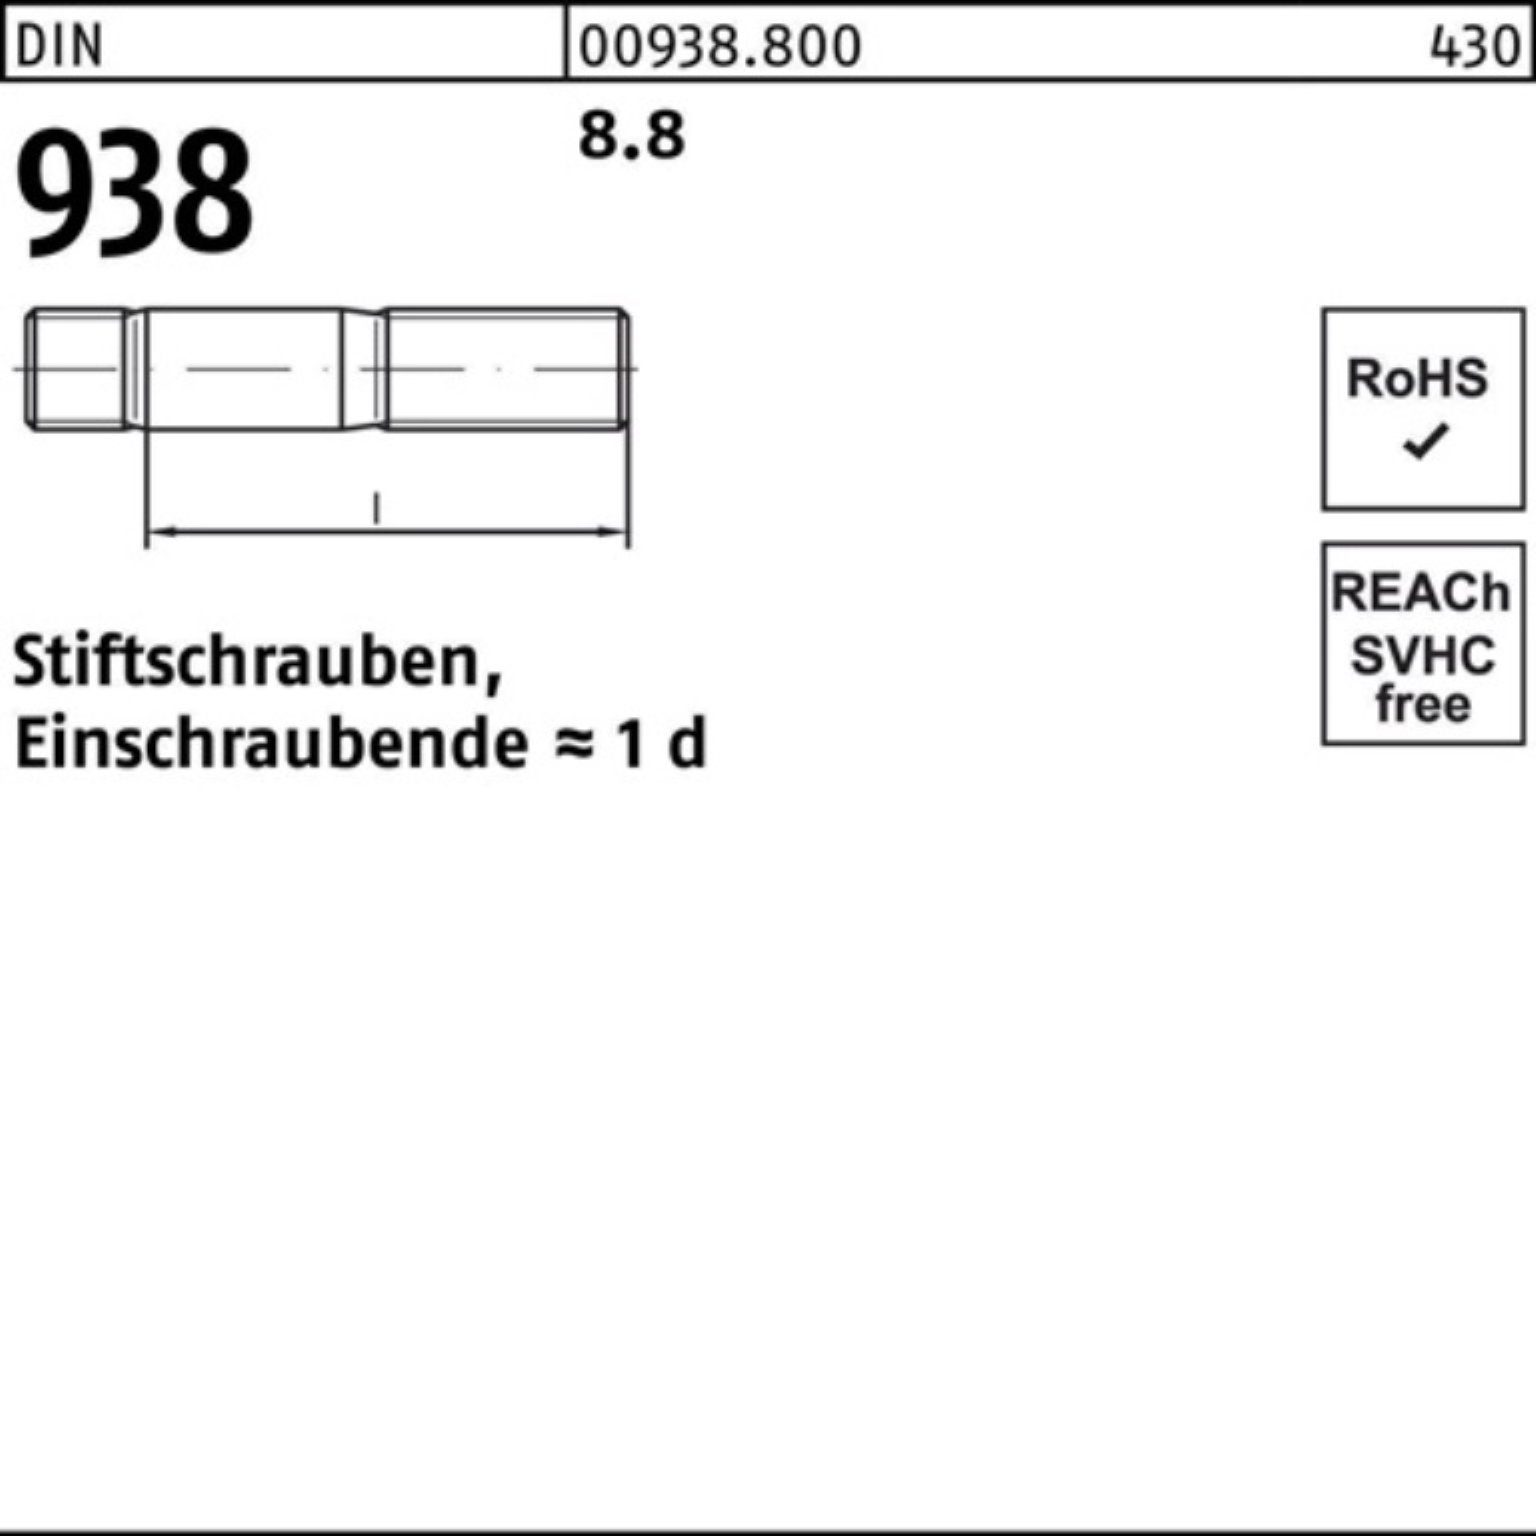 Reyher Stiftschraube 10 Stiftschraube 938 DIN M20x 938 8.8 Sti 75 DIN 100er Stück Pack 8.8